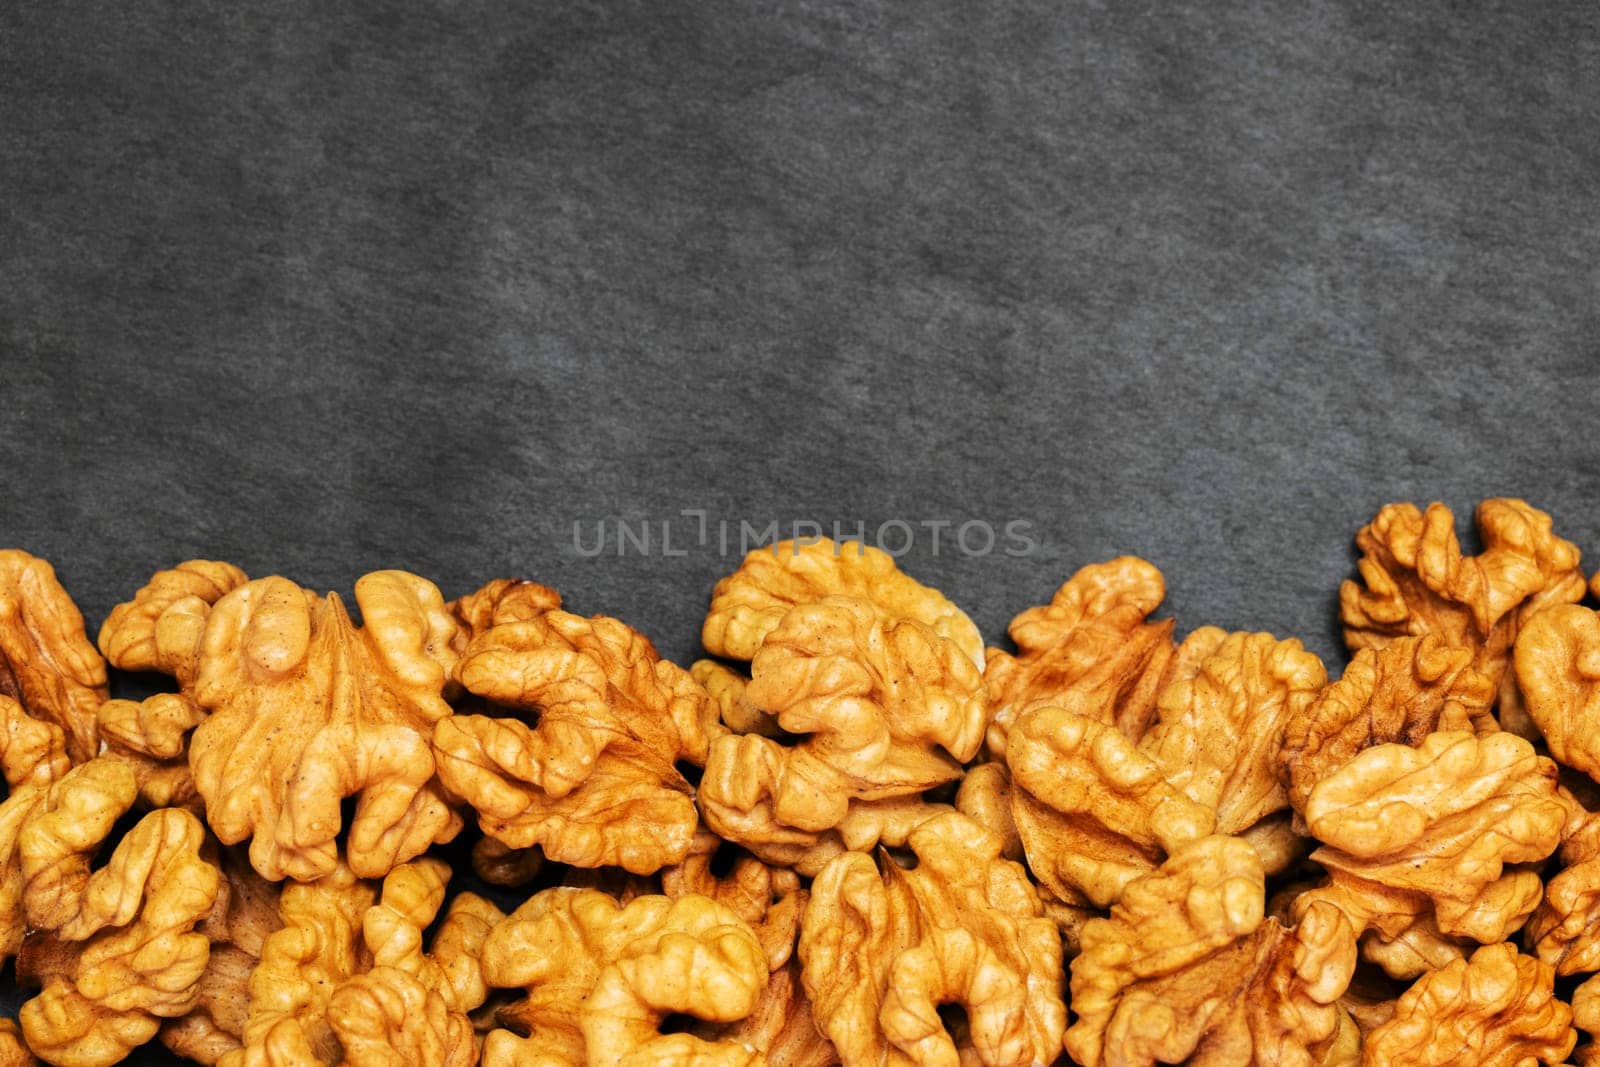 Walnuts. Walnut kernels on dark stone table. Top view.